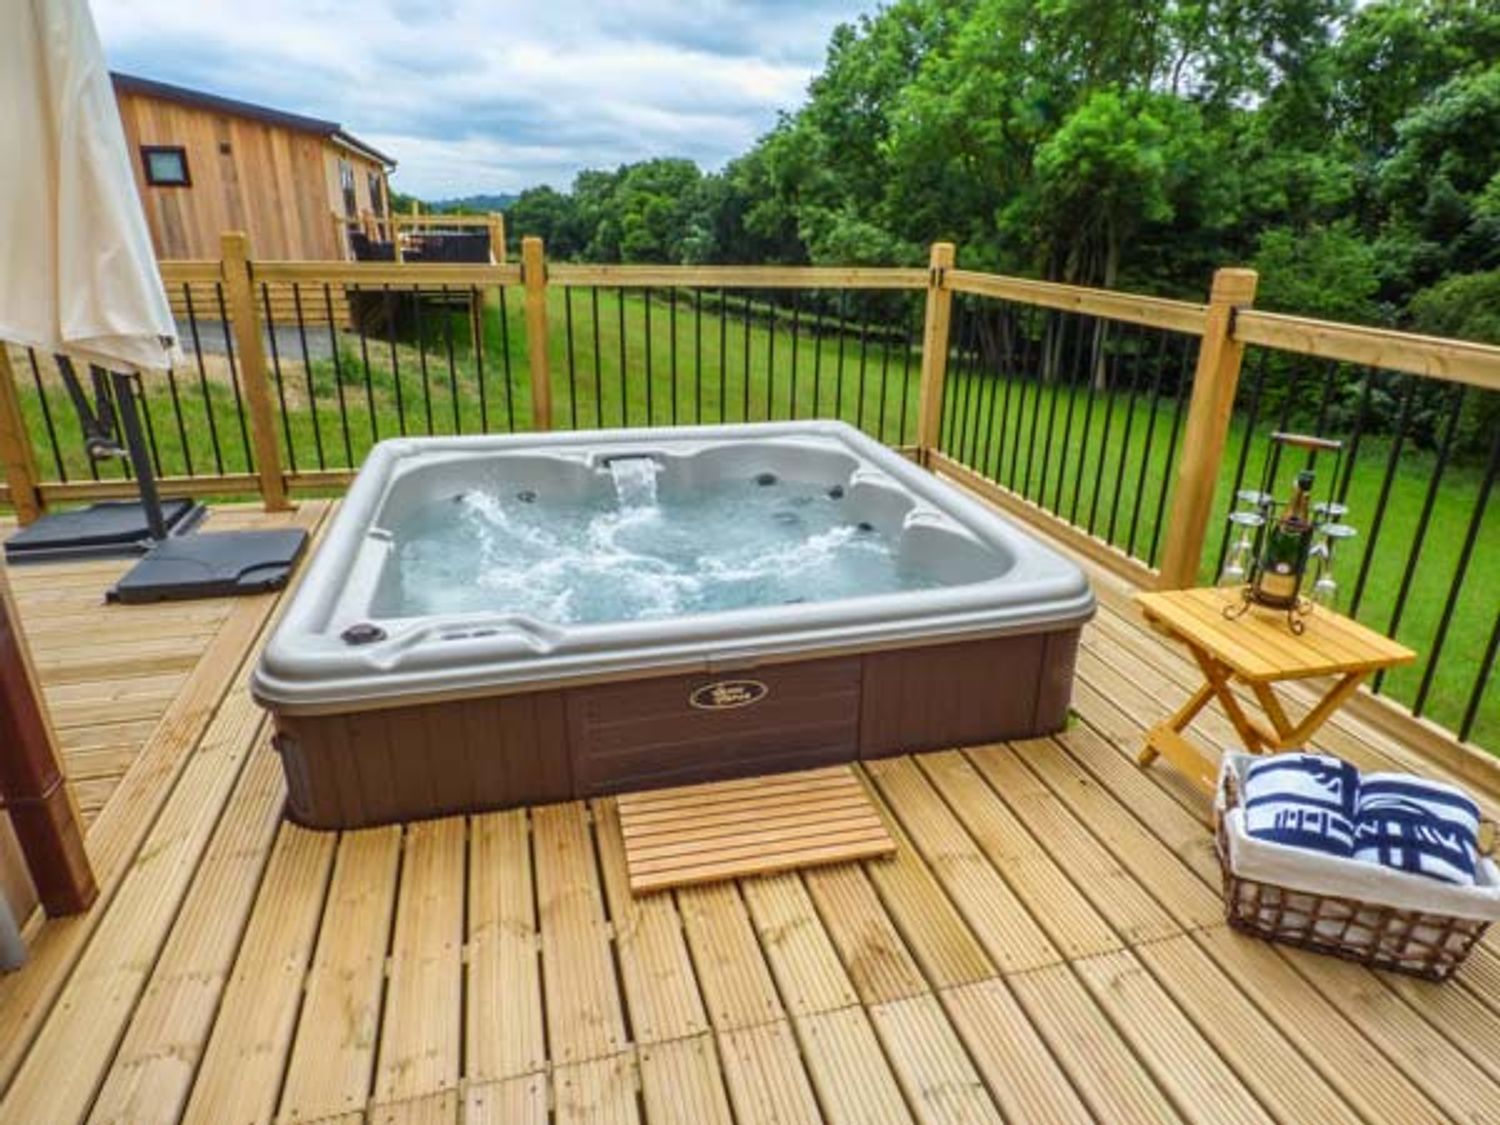 Beech Lodge Shropshire Shropshire England Hot Tub Getaways Hot Tub Cottages Hot Tub